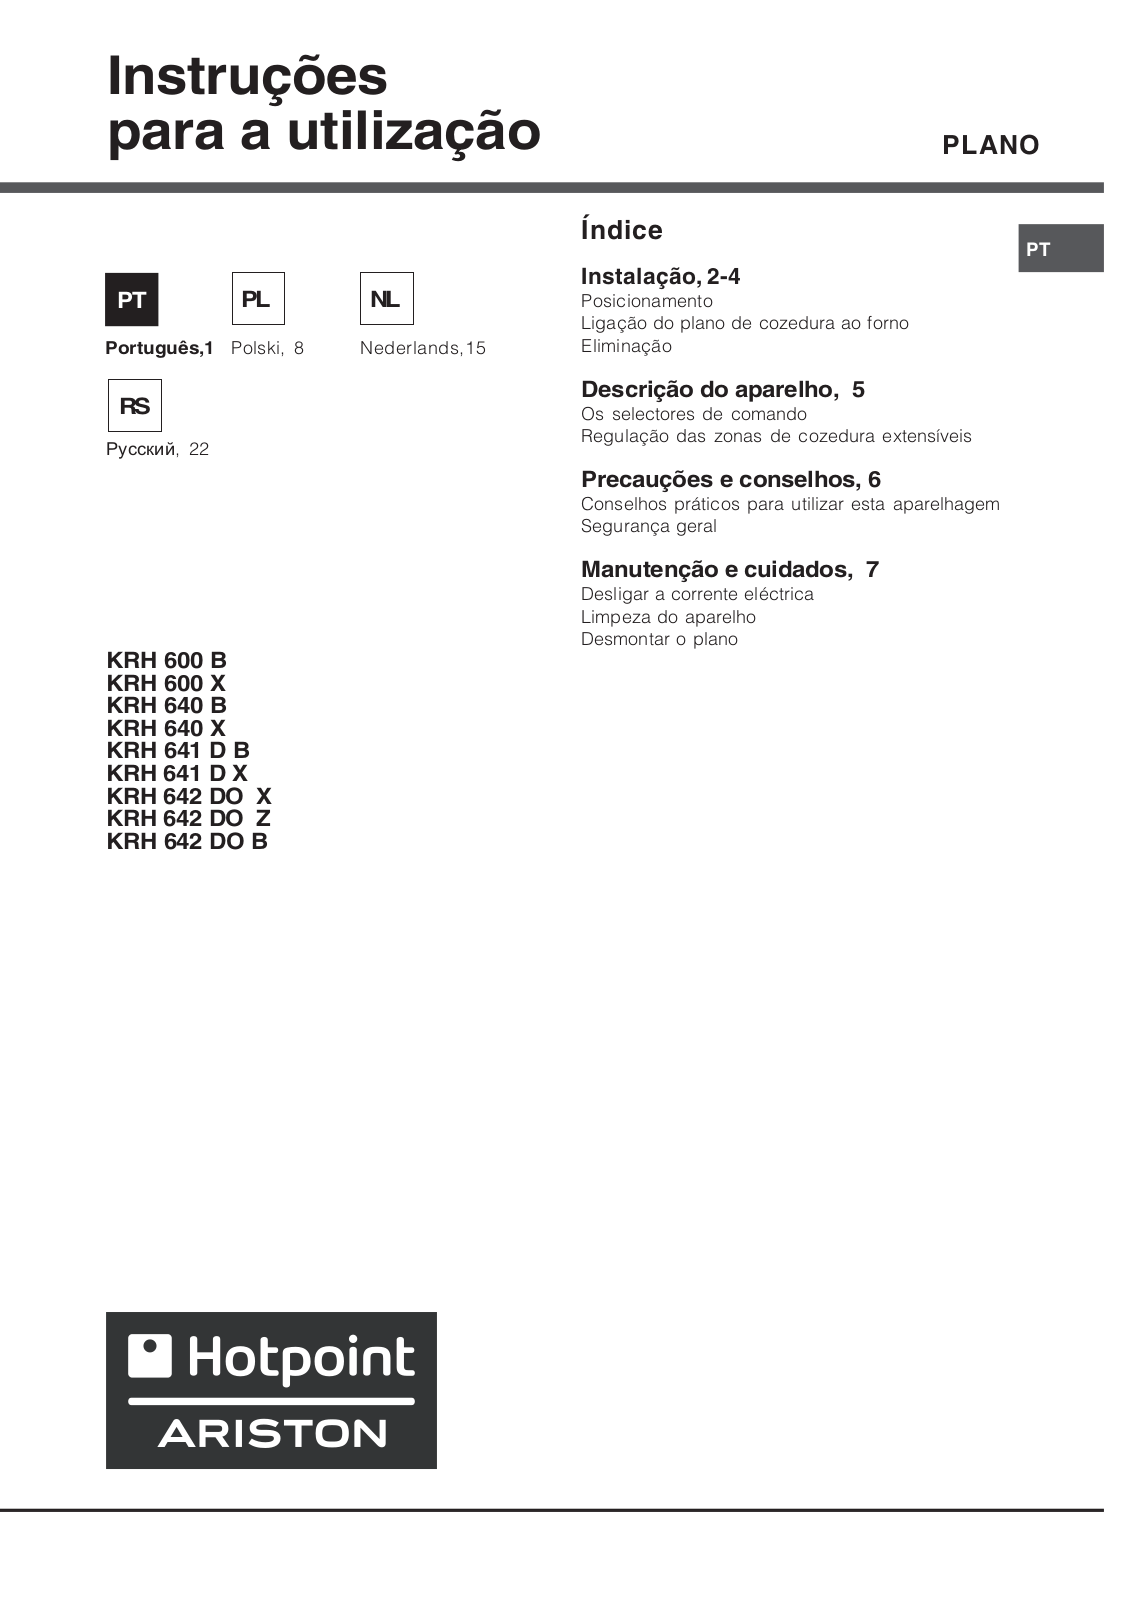 Hotpoint Ariston KRH 600 B, KRH 642 DO Z, KRH 640 B, KRH 641 D B, KRH 600 X Manual